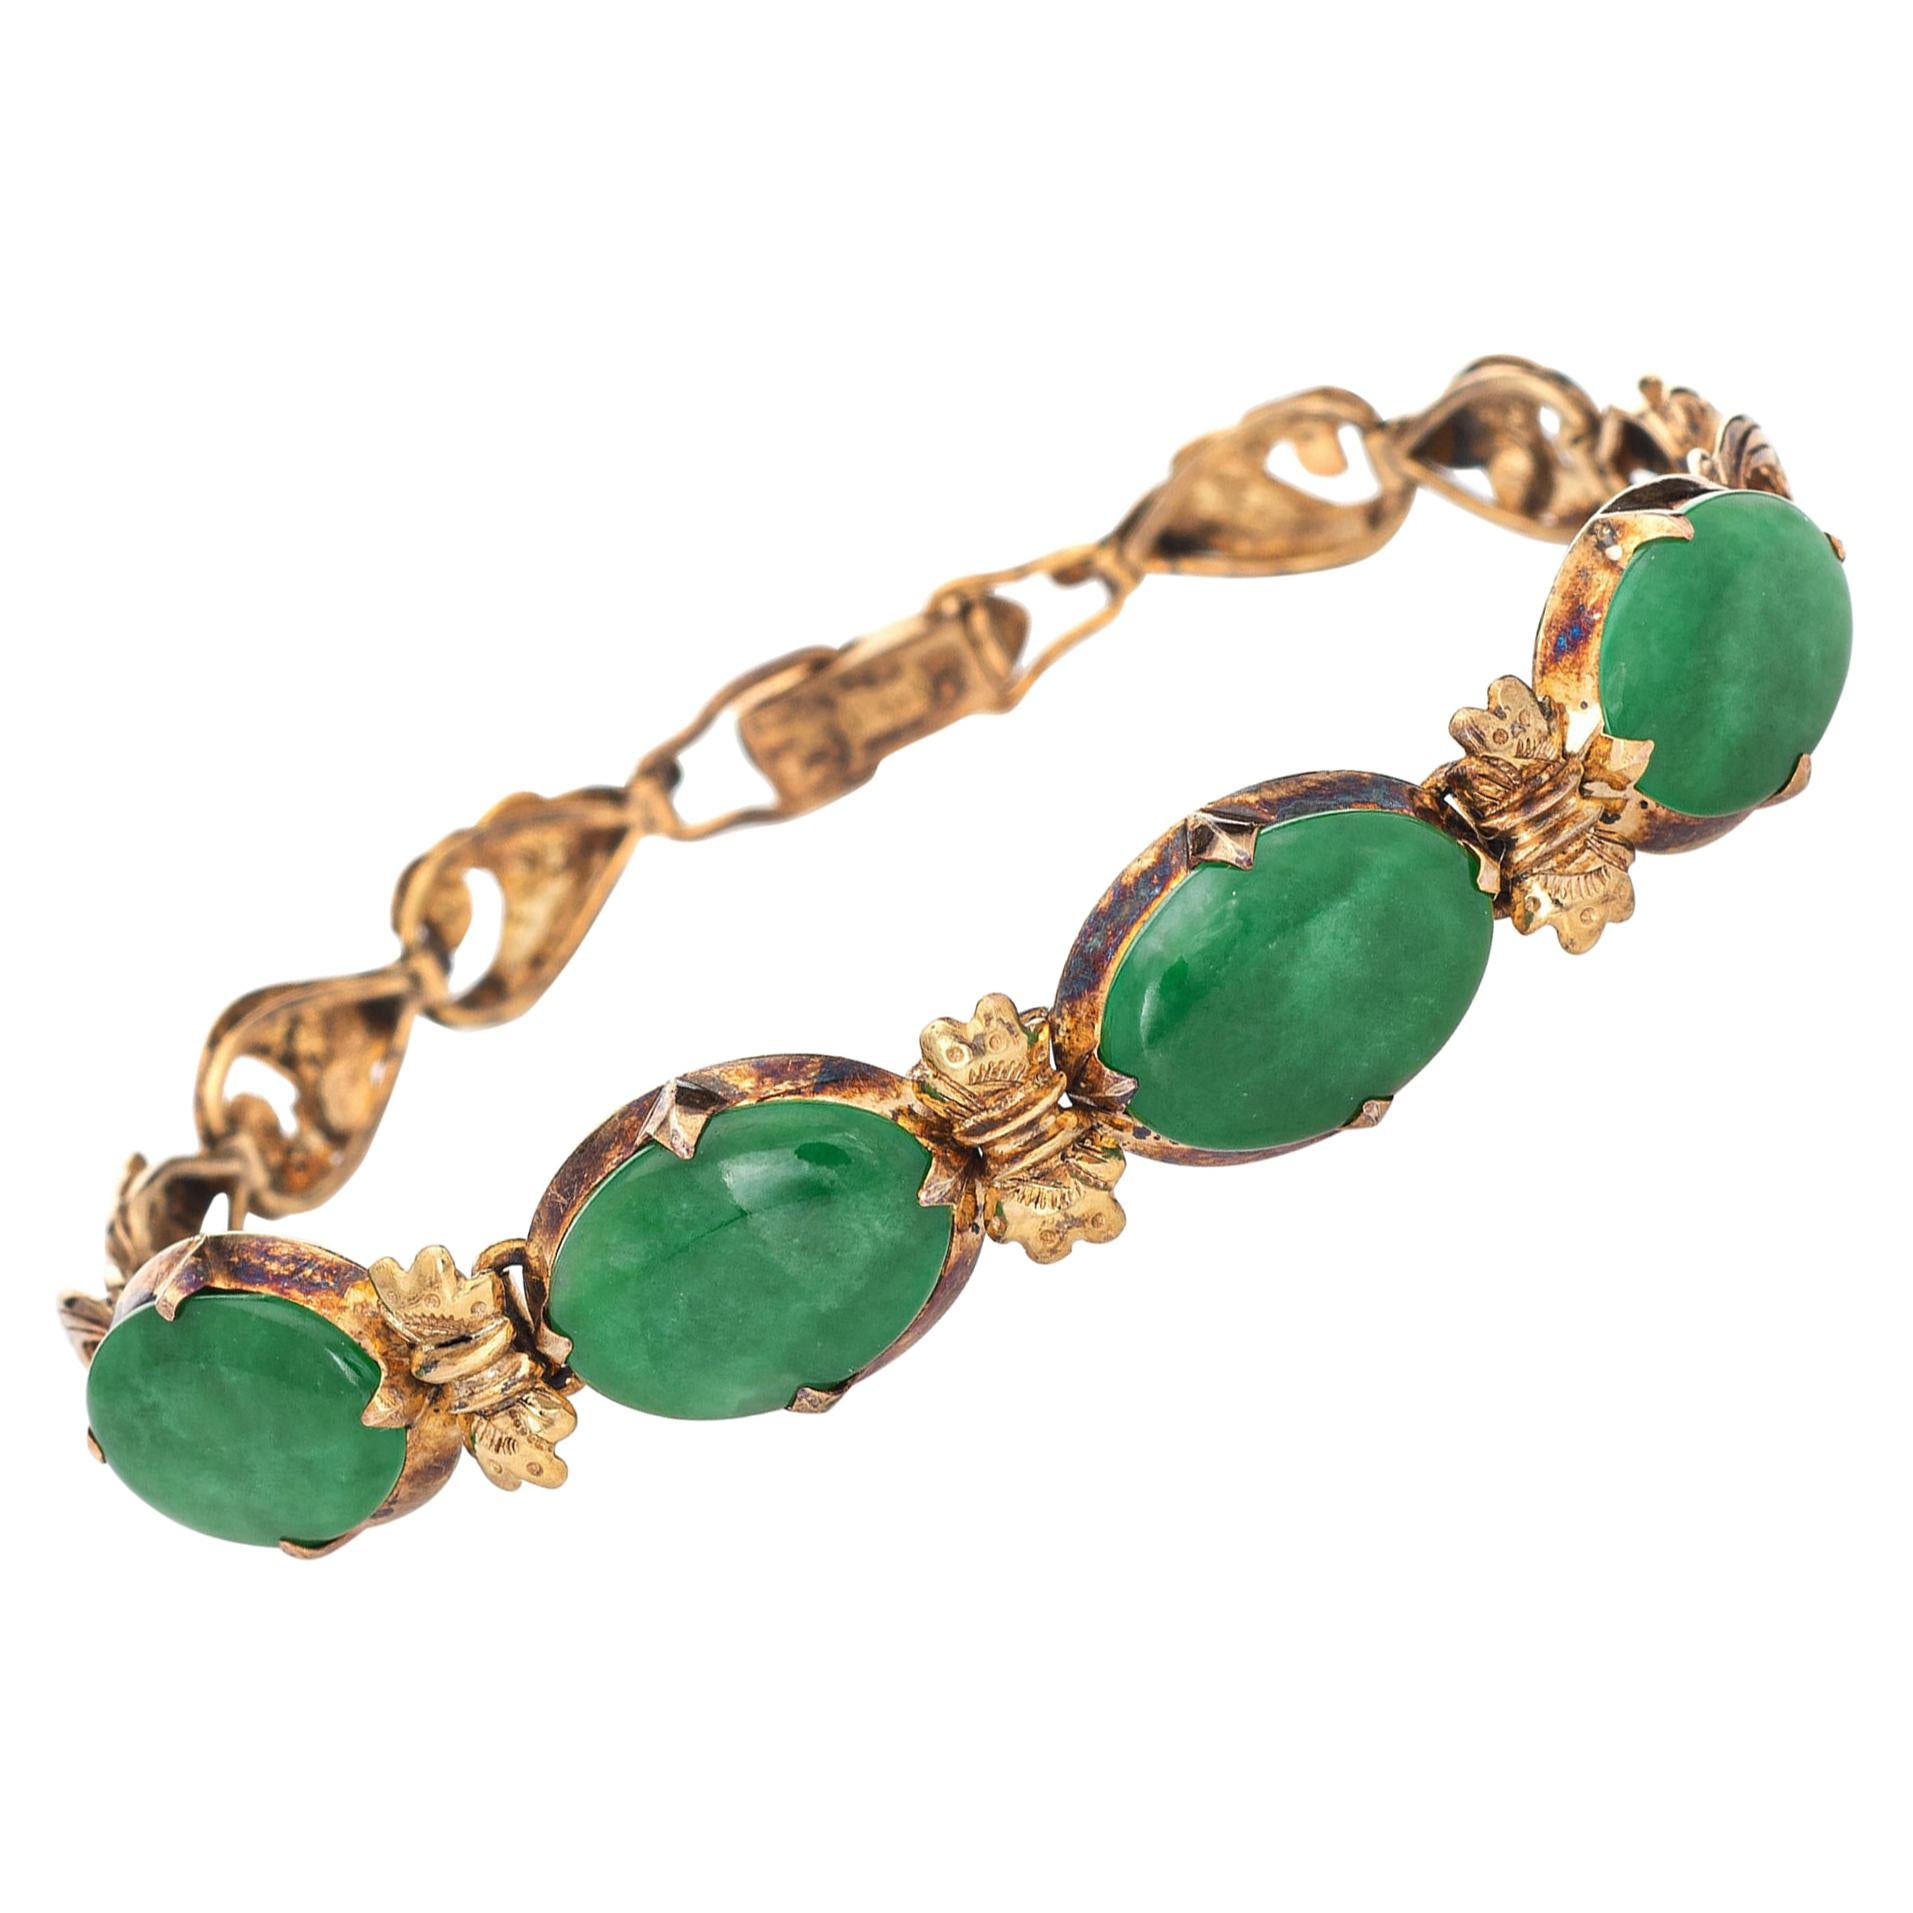 Certified Natural A Grade Jadeite Jade Bracelet Vintage 14k Gold Certificate